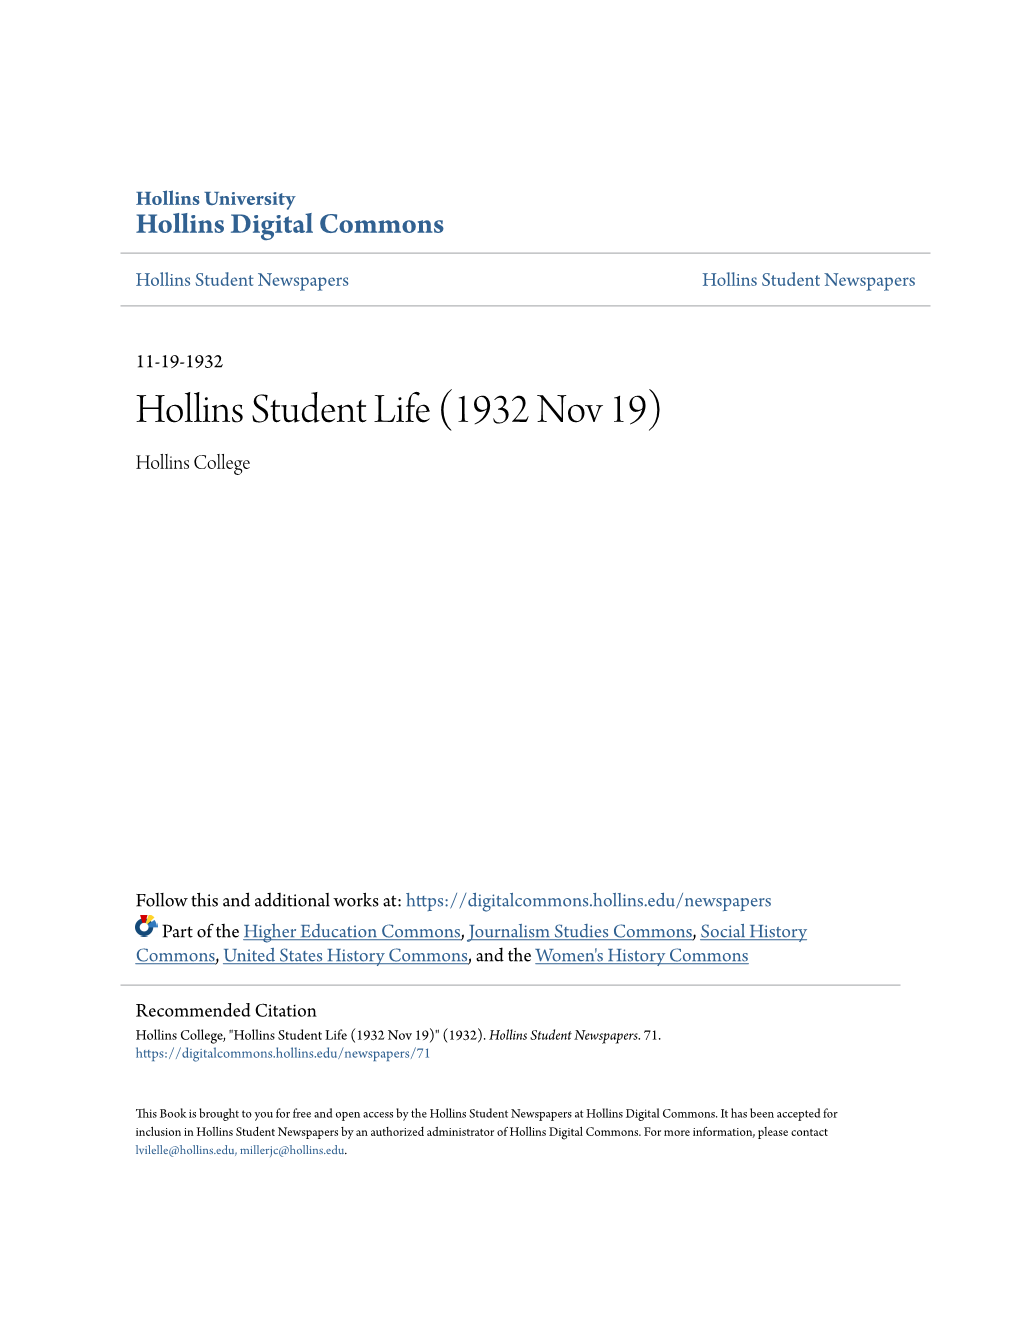 Hollins Student Life (1932 Nov 19) Hollins College